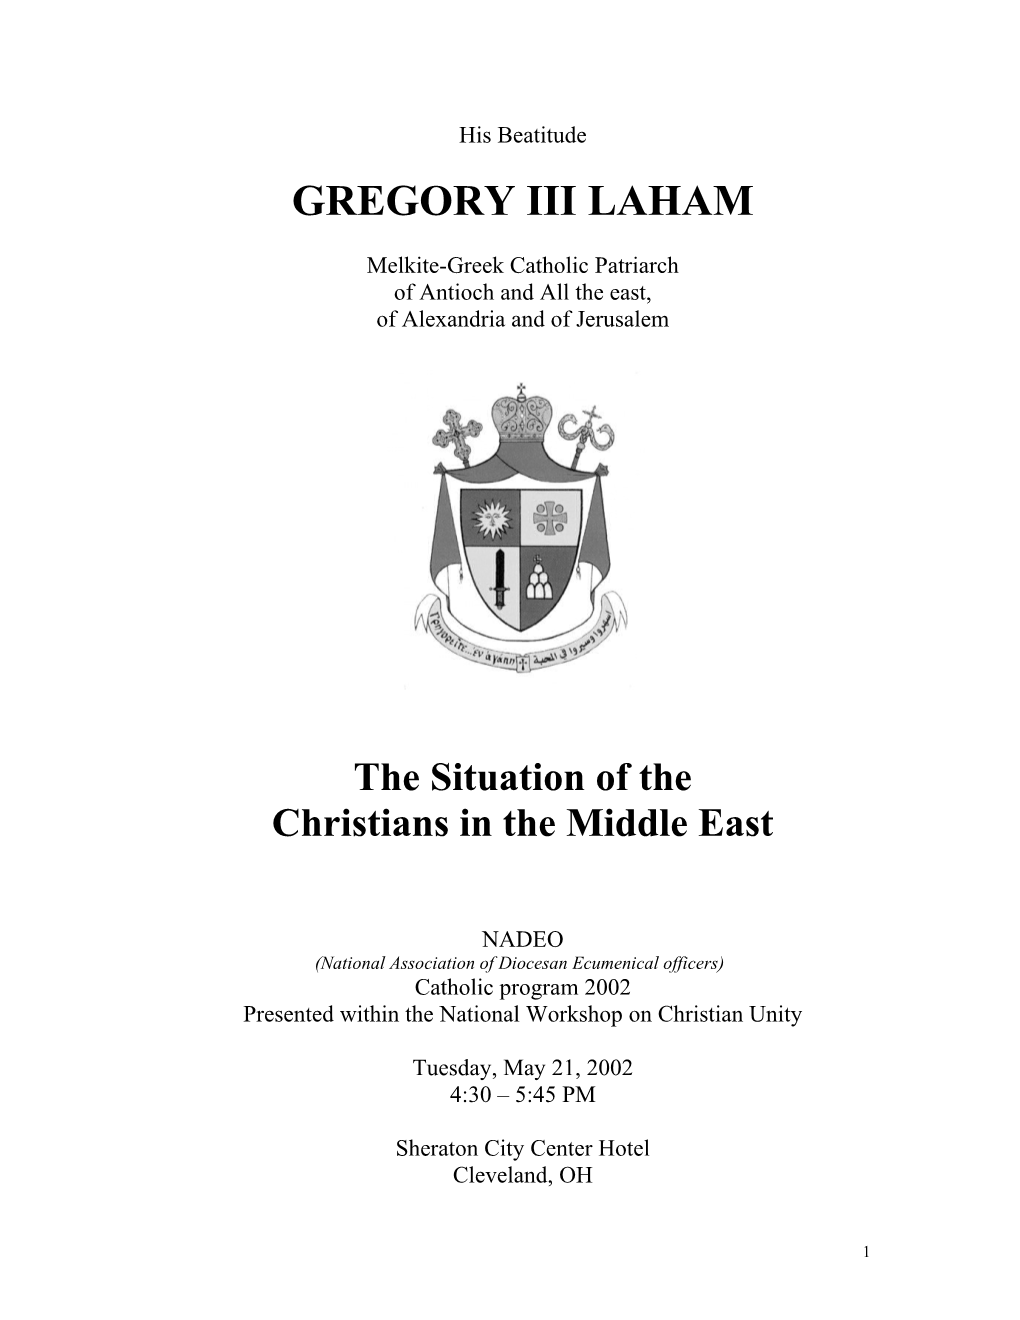 Gregory III Laham